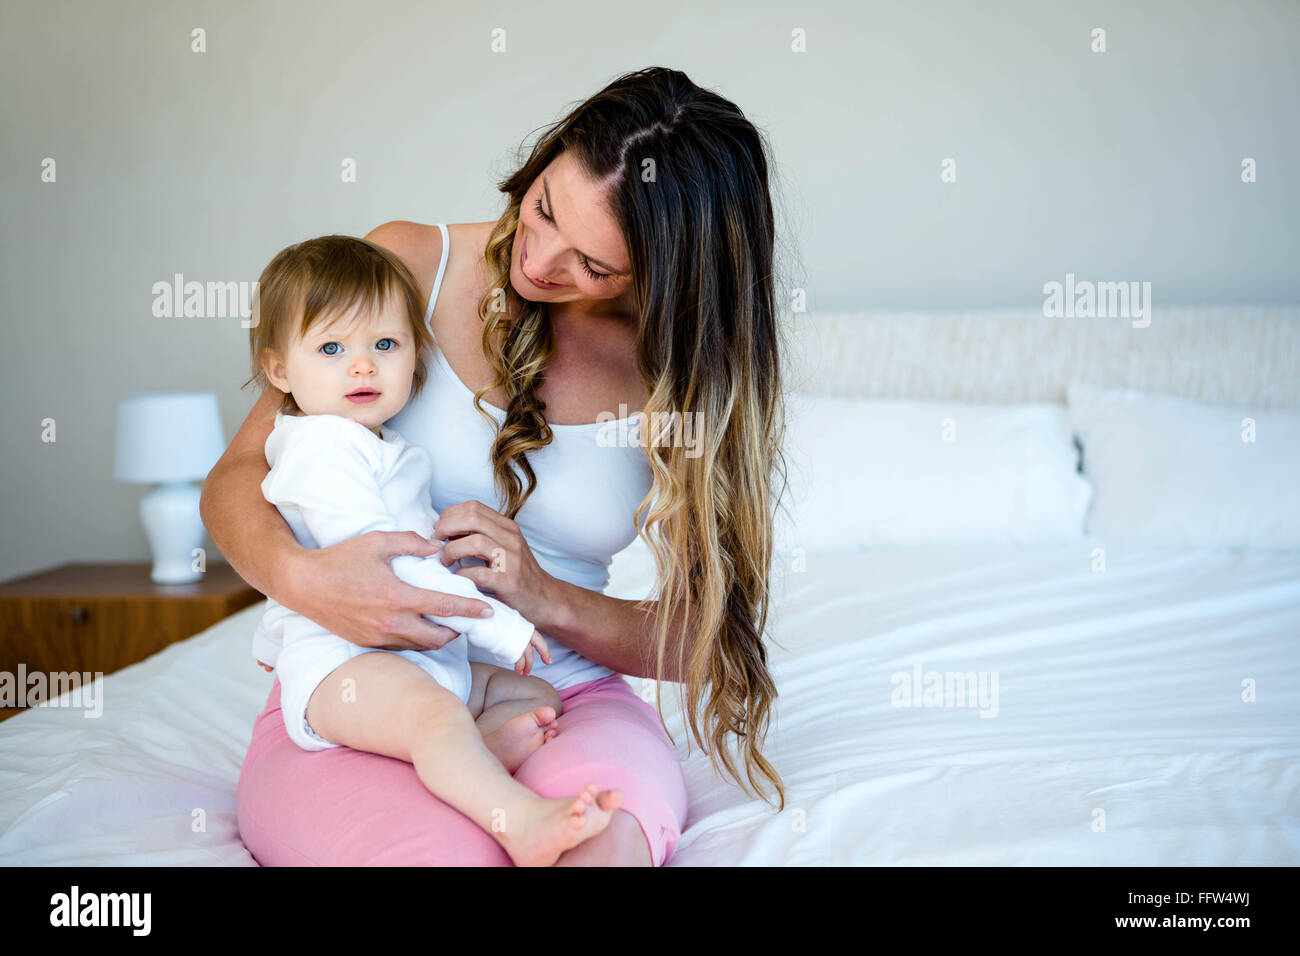 Brunette woman holding a baby sur un lit Banque D'Images